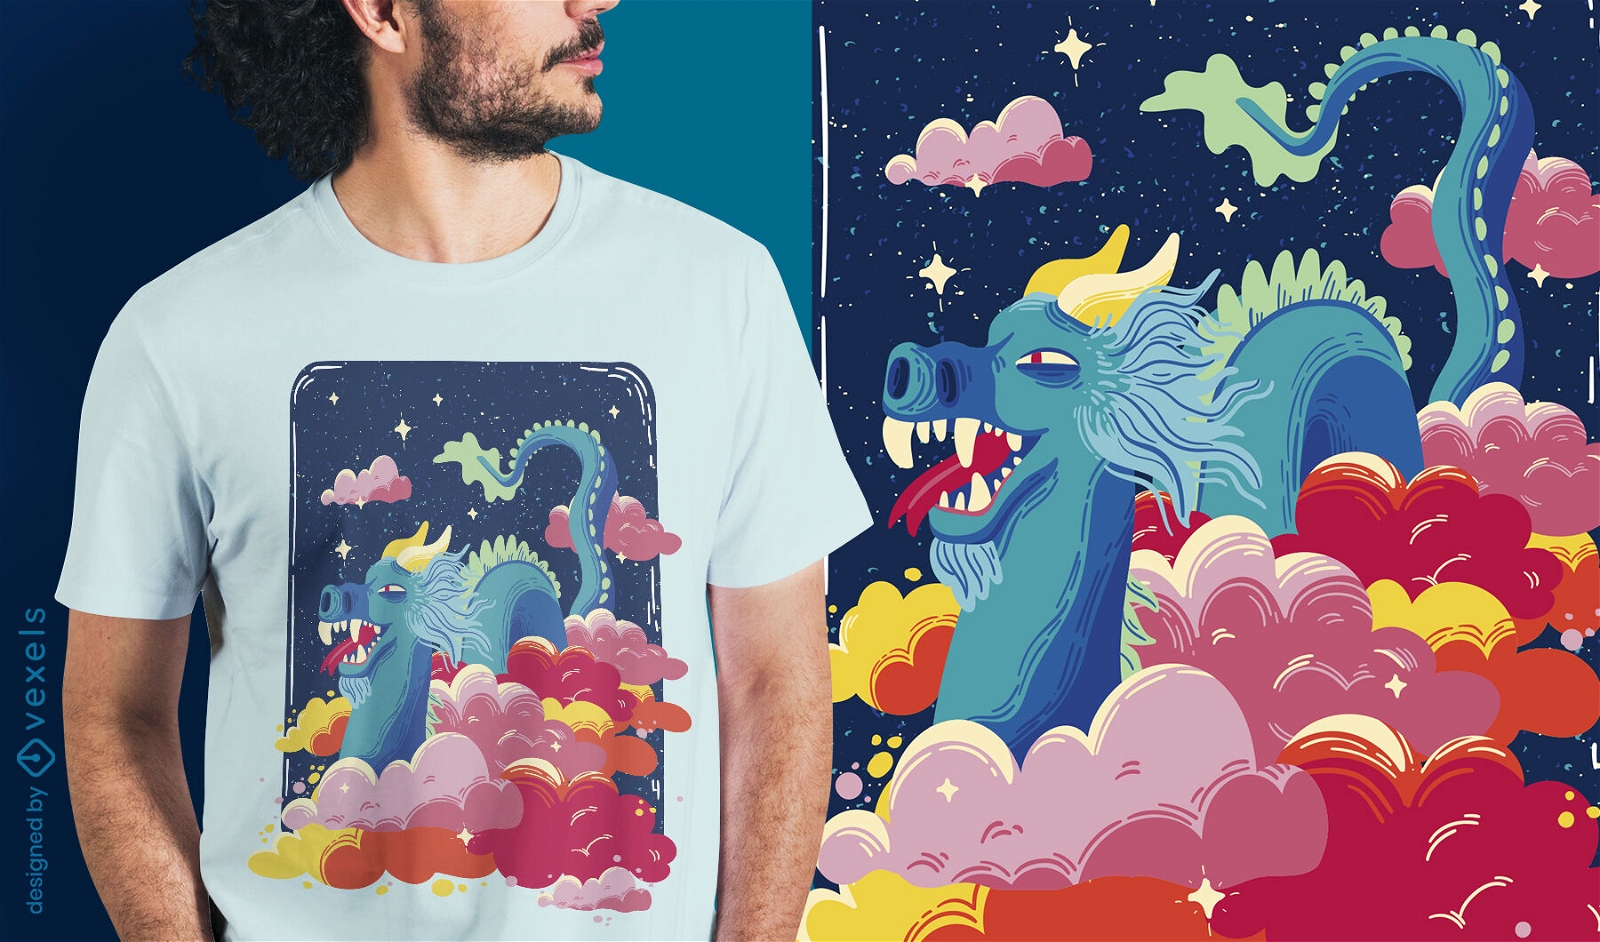 Design de t-shirt com drag?o de conto de fadas nas nuvens